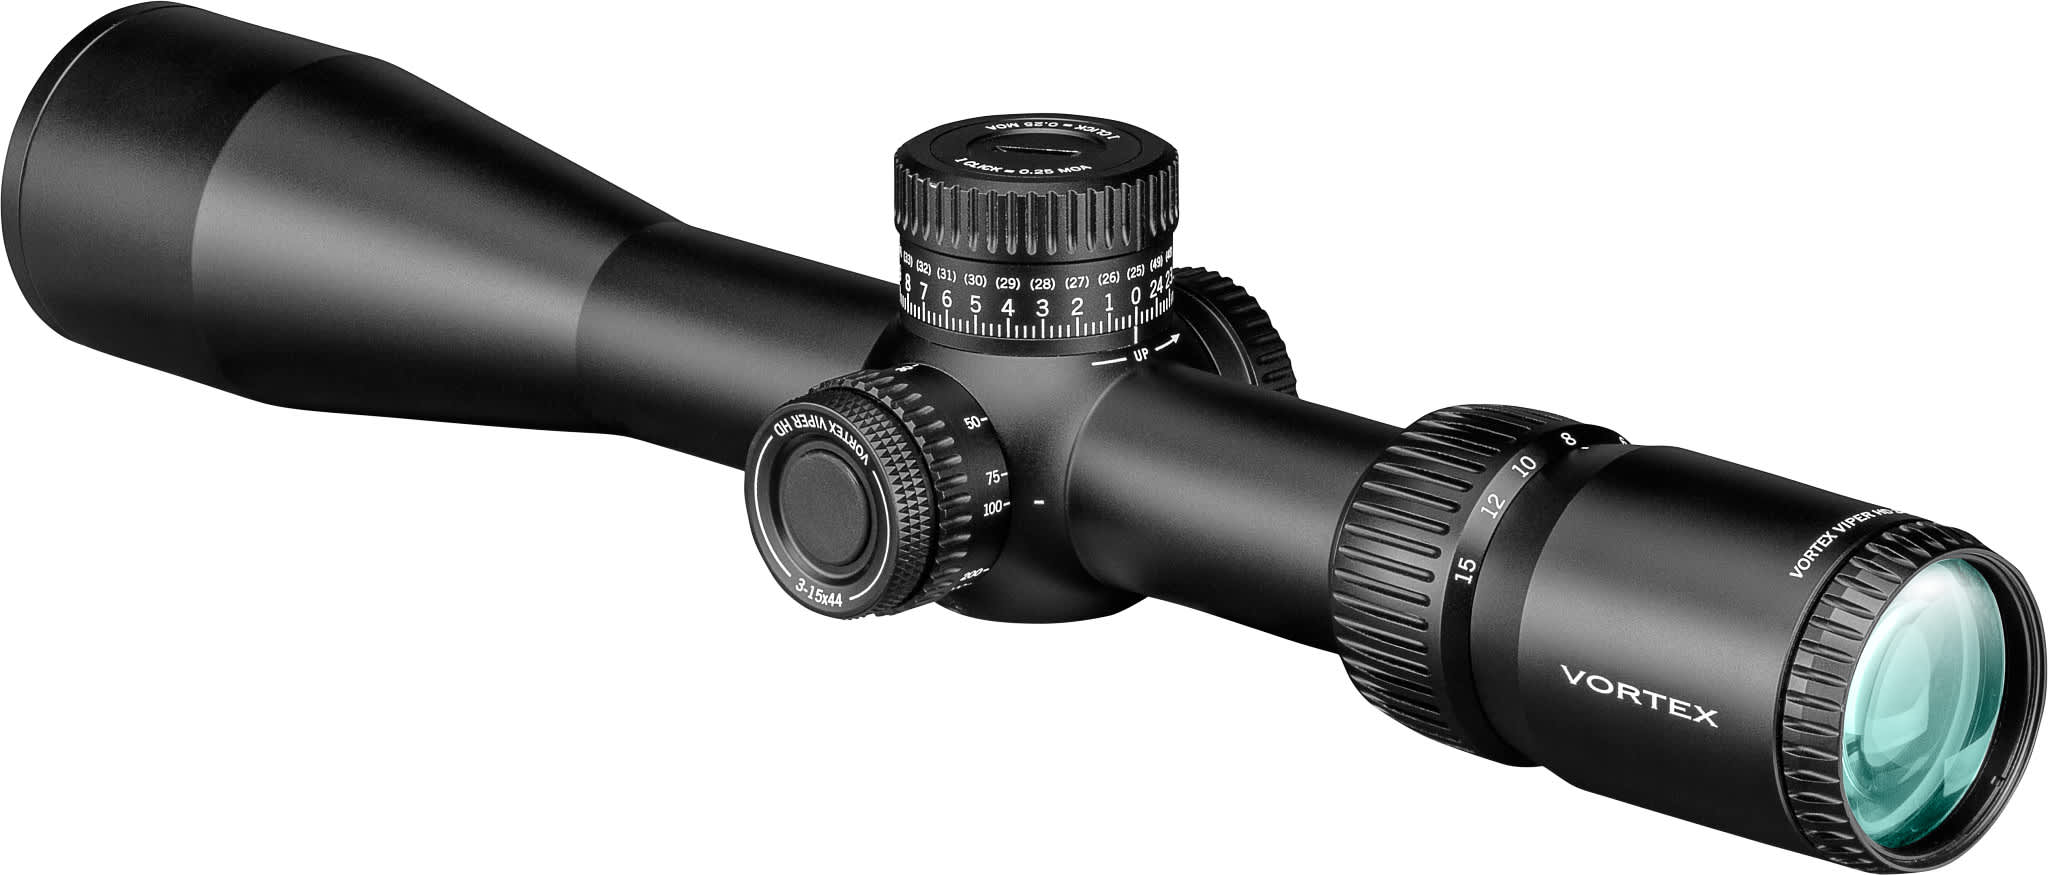 Vortex® Viper HD Riflescopes - 3-15x44mm - SFP VMR-3 MOA